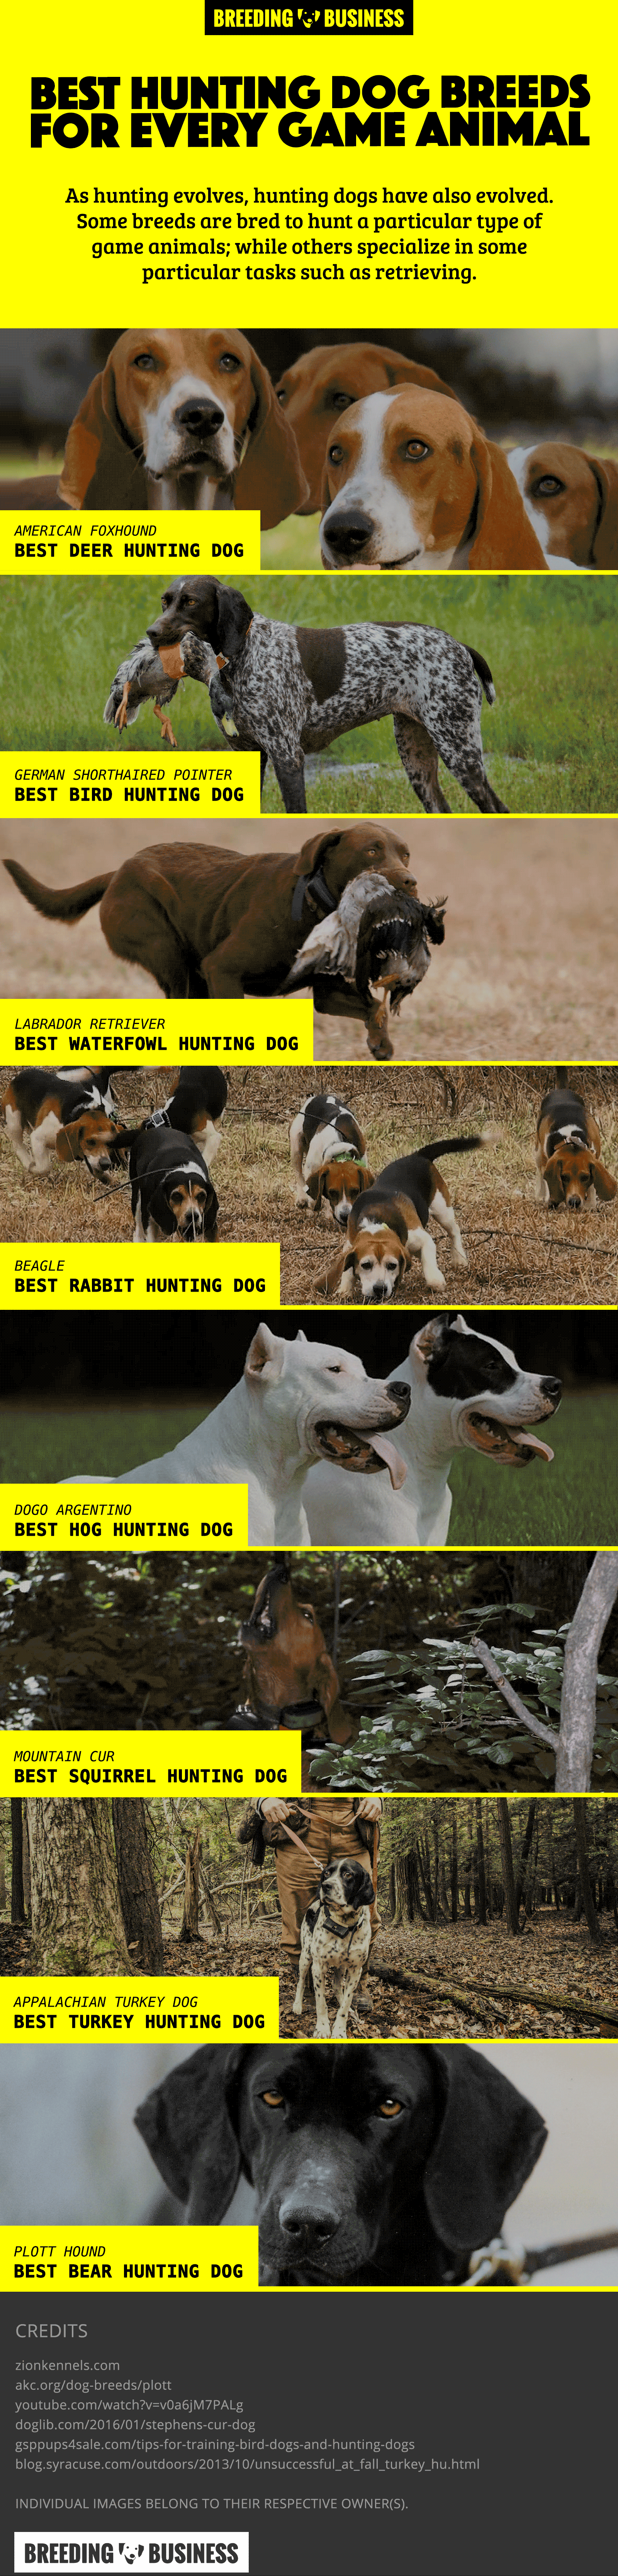 best deer hunting dog breeds